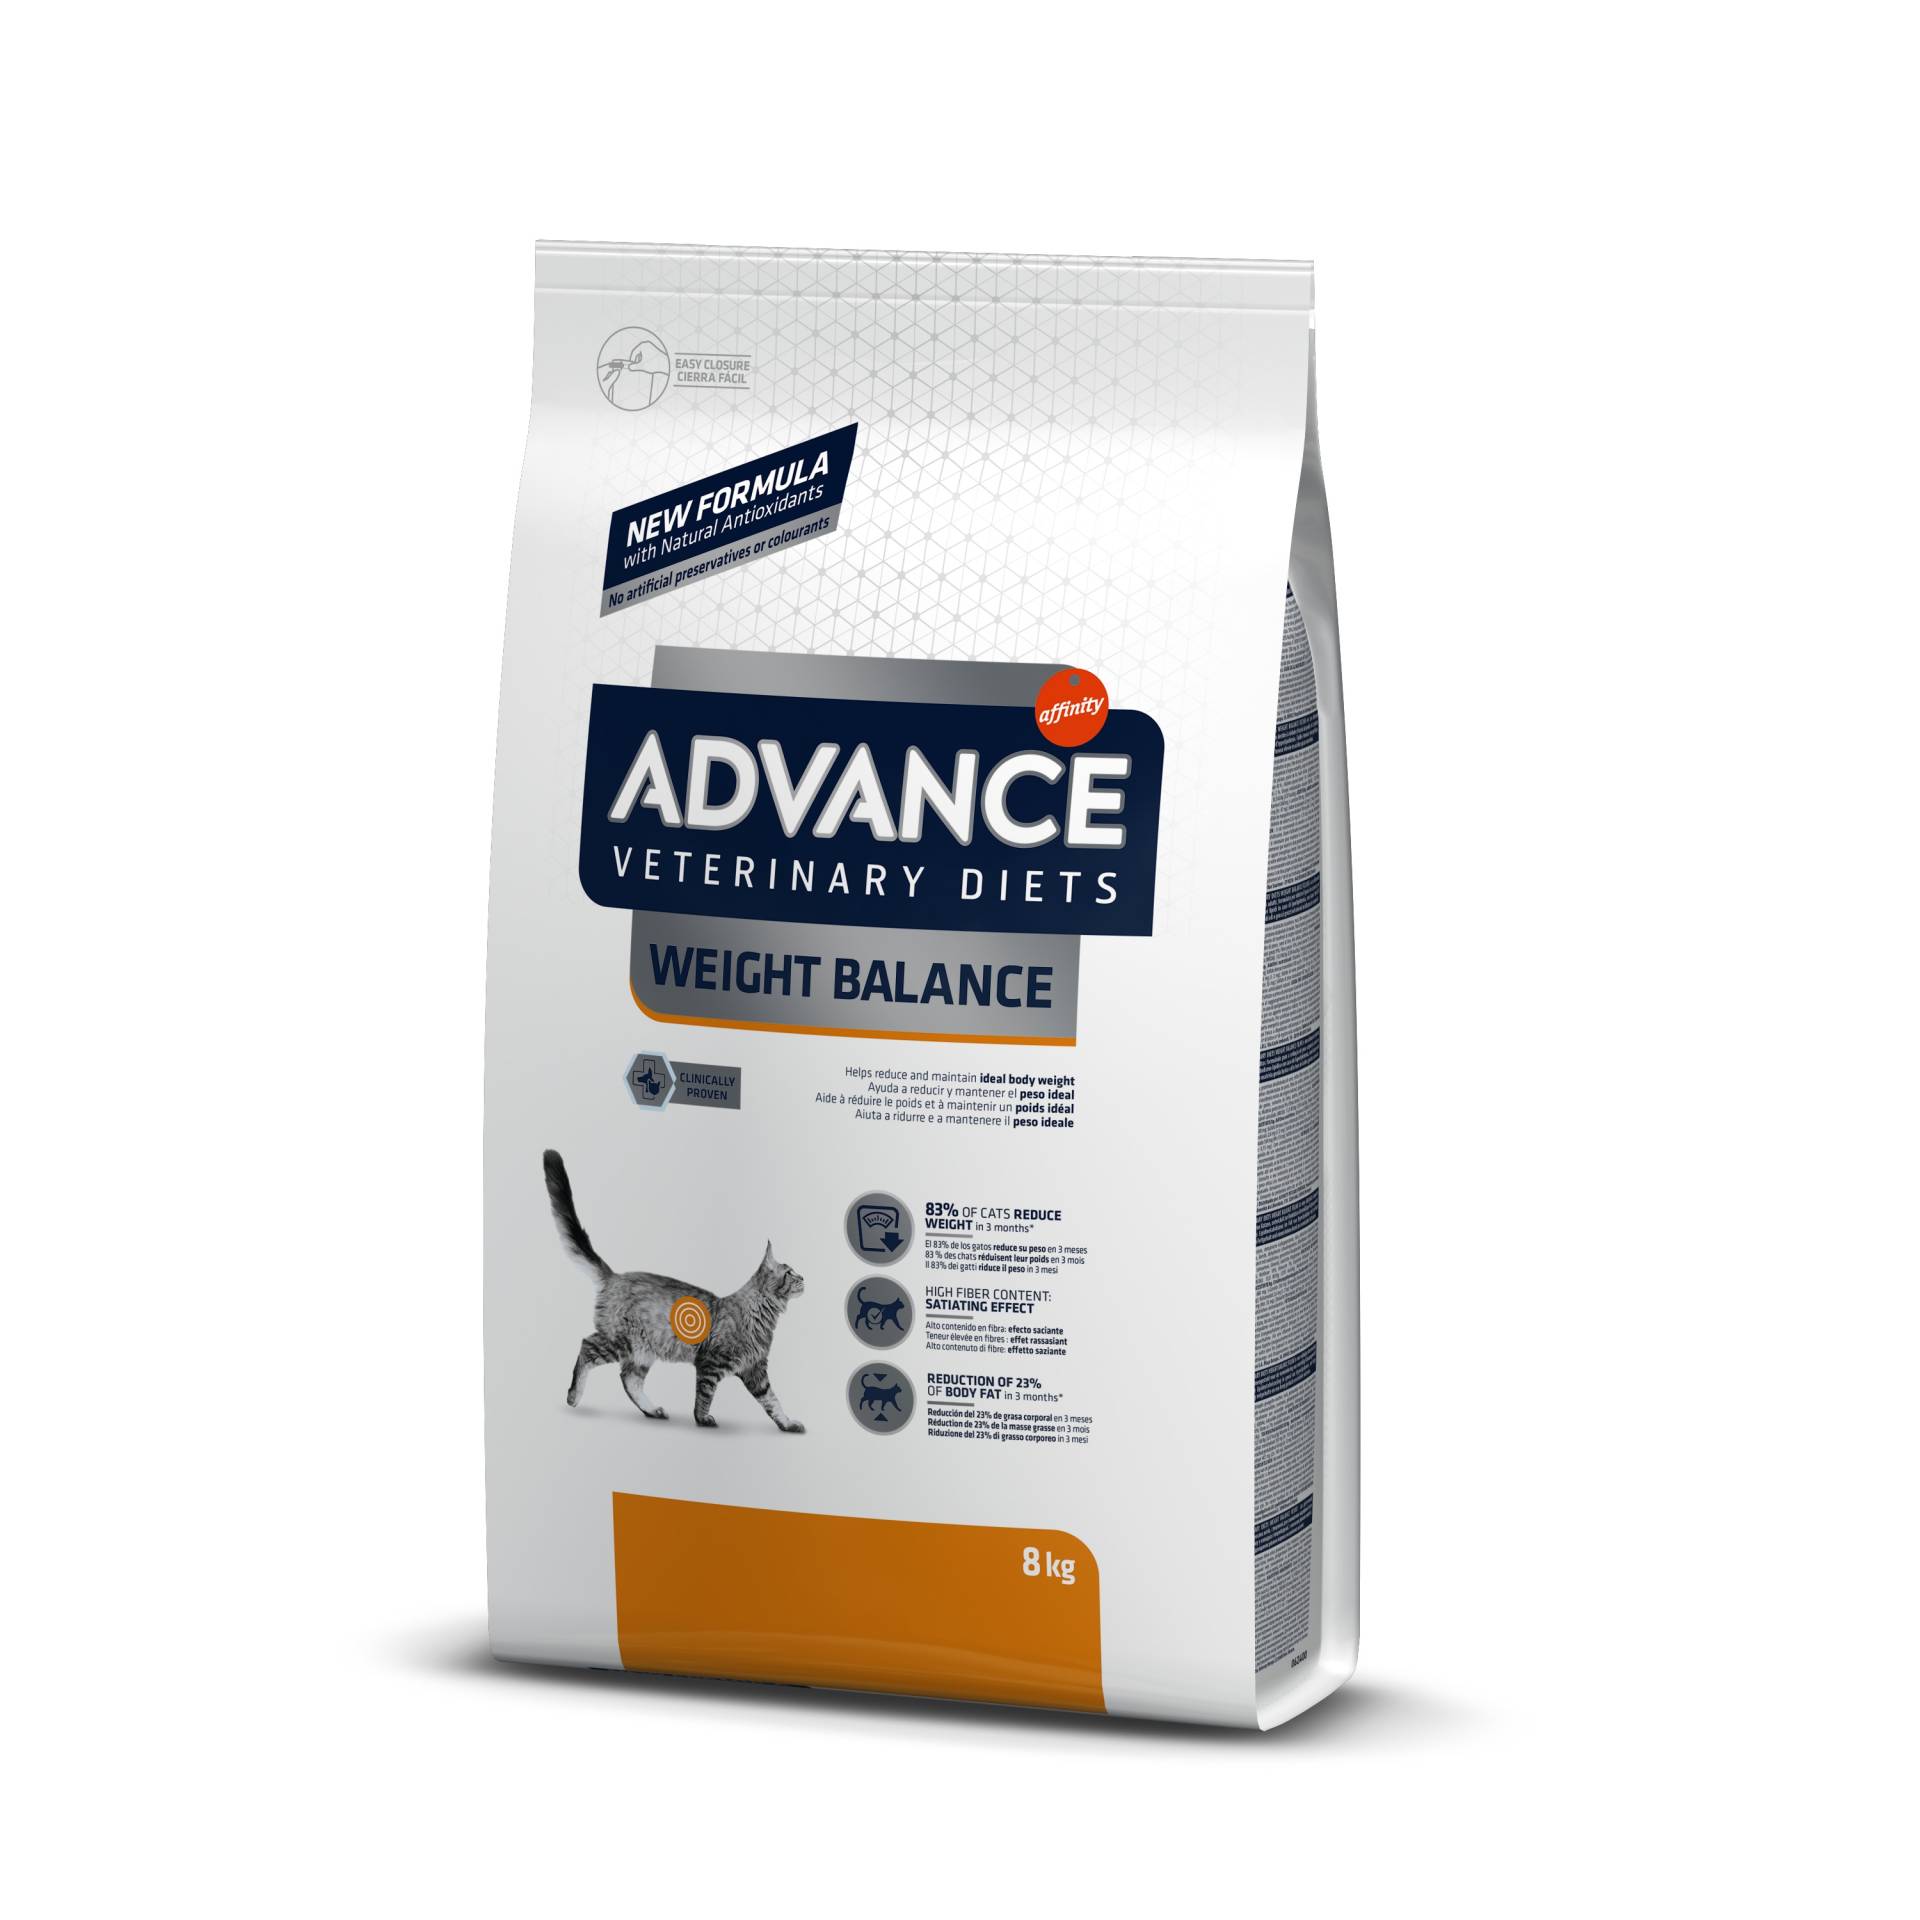 Advance Veterinary Diets Weight Balance - 8 kg von Affinity Advance Veterinary Diets